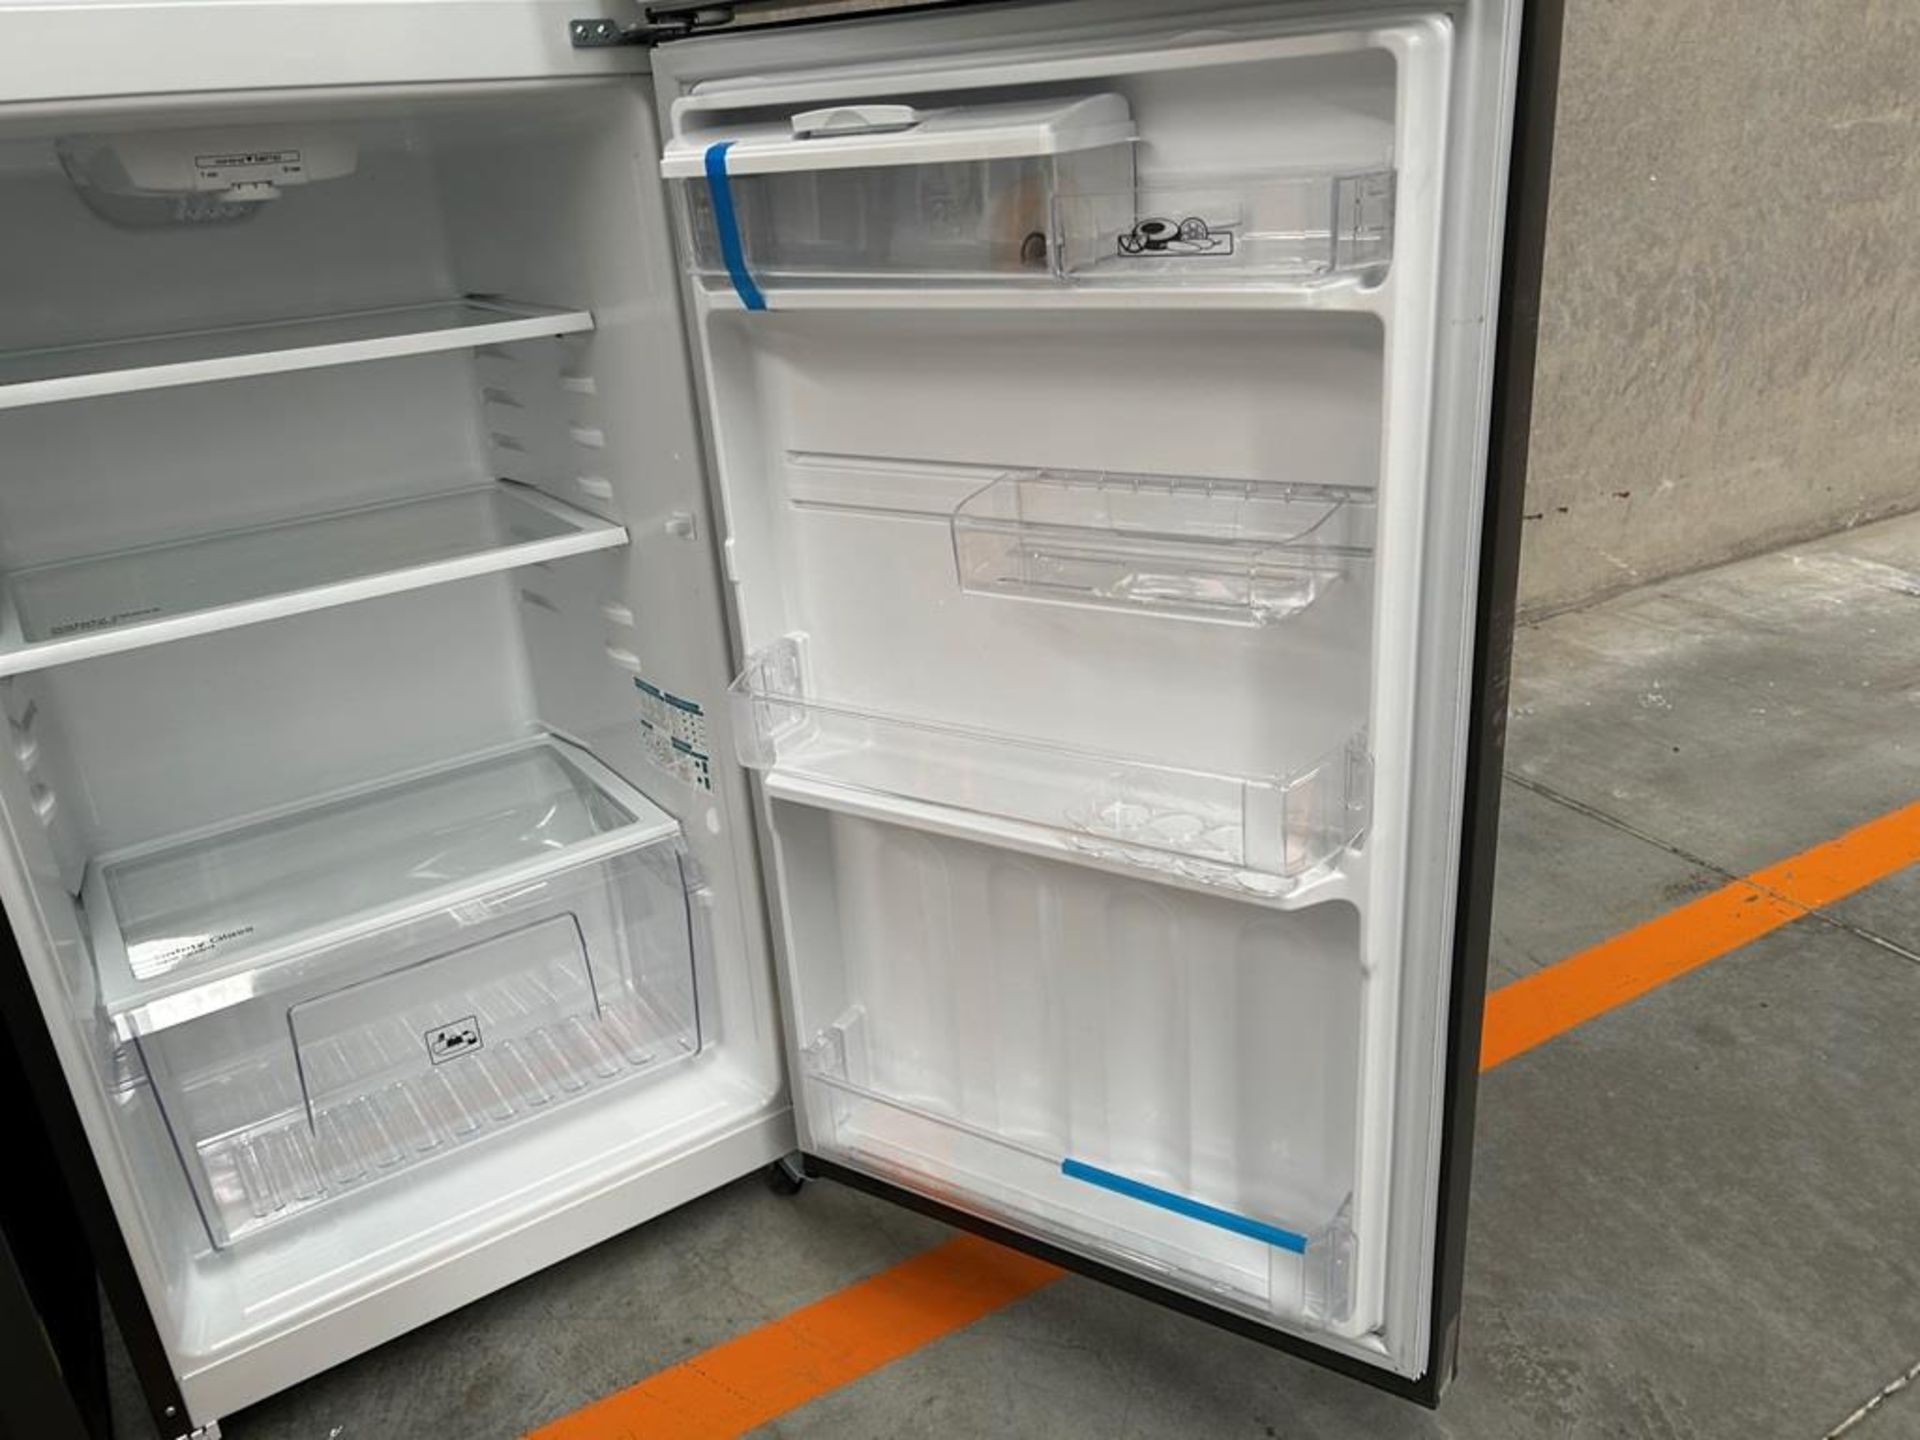 Lote de 2 refrigeradores contiene: 1 Refrigerador con dispensador de agua Marca MABE, Modelo RME360 - Image 13 of 18